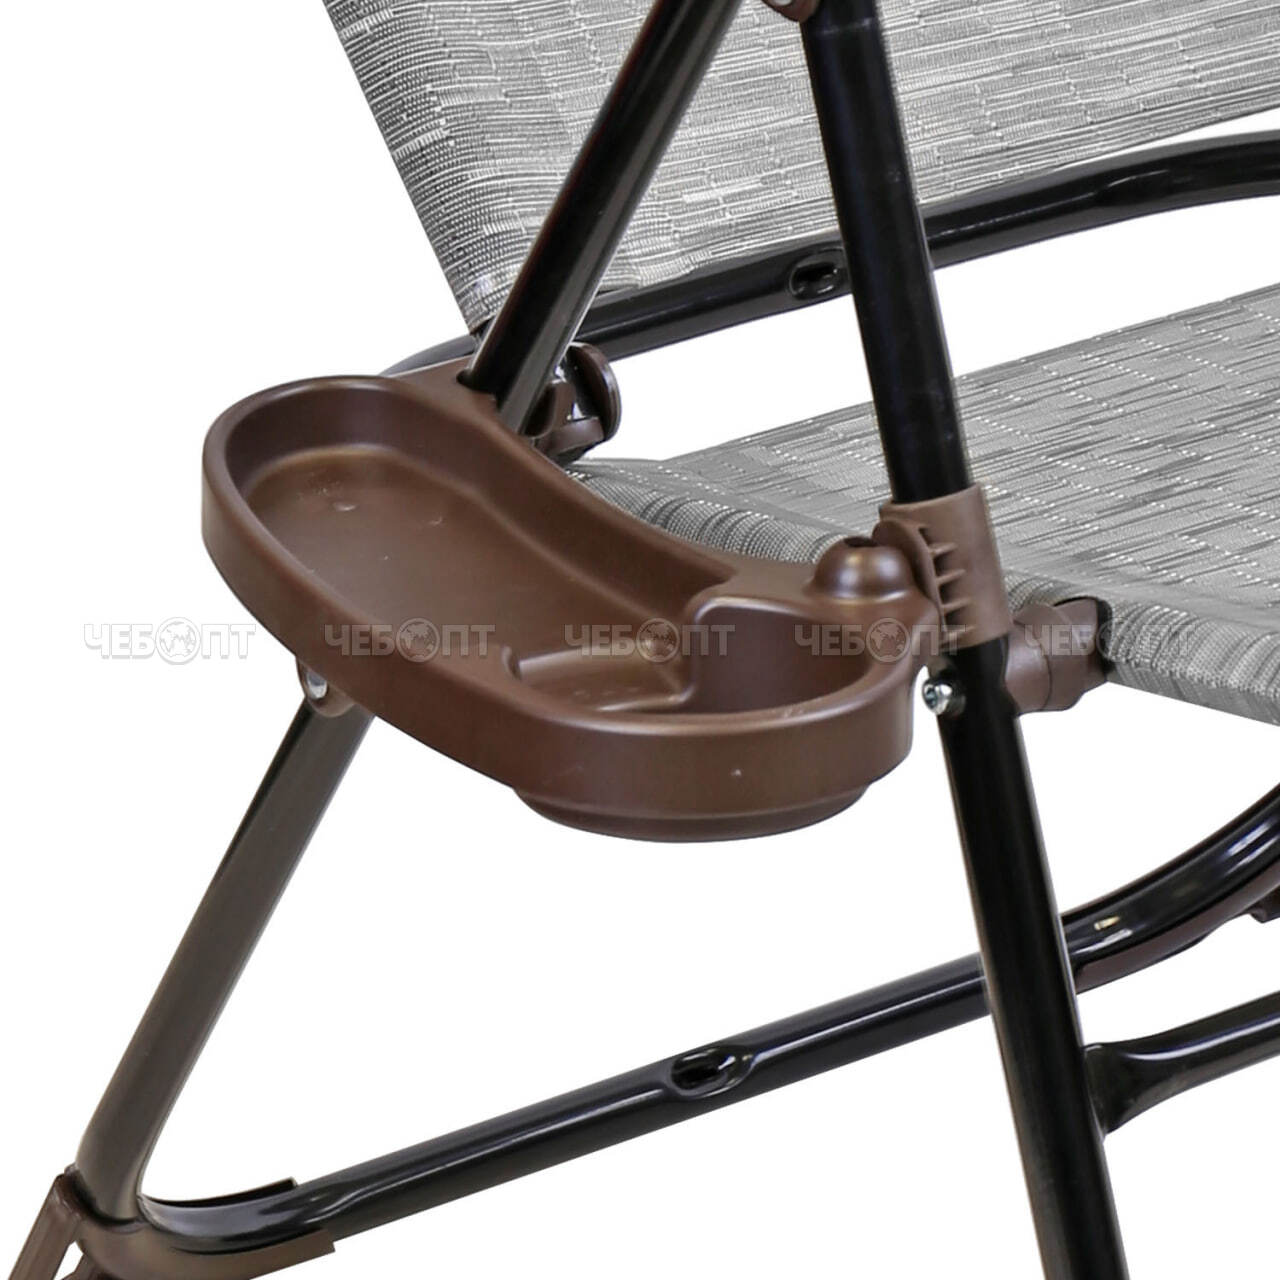 Кресло - шезлонг складное,БАМБУК, 8 положений спинки, съем. подголов, подстакан,  размер 750*700*1090 мм, макс.нагрузка 120кг арт. КШ2/4 NIKA [1]. ЧЕБОПТ.